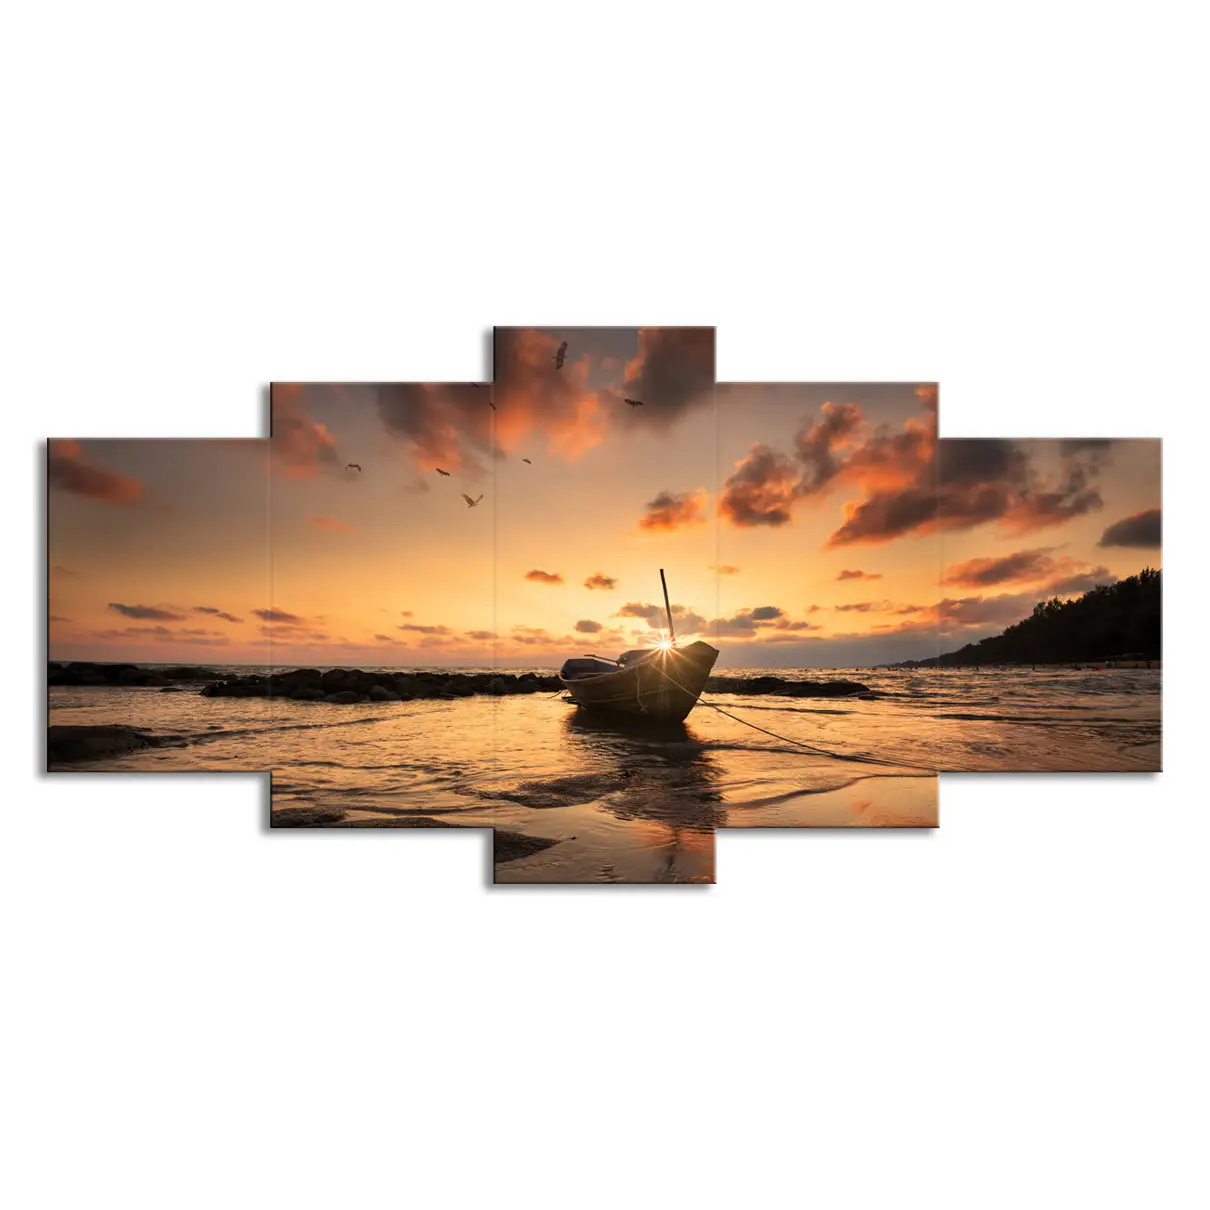 Pôster moderno em tela para decoração de paredes de sala de estar, com vista para o mar e pôr do sol, desenho de barco, desenho animado